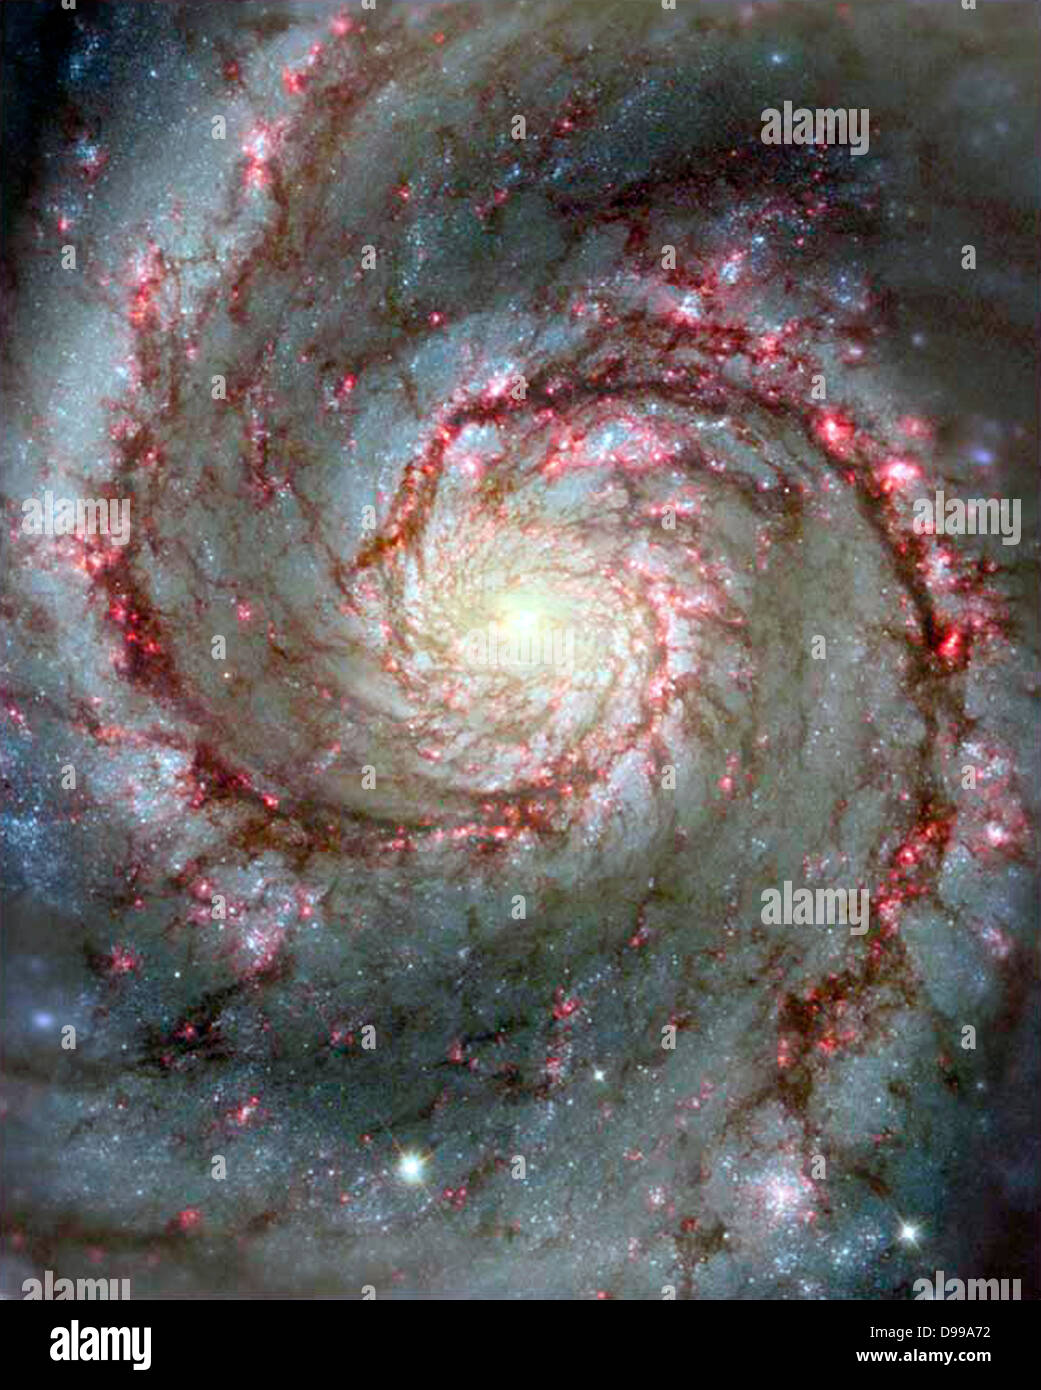 Die Spiralarme und Staubwolken in der nahe gelegenen Whirlpool-Galaxie. Hubble Space Telescope (HST). Stockfoto